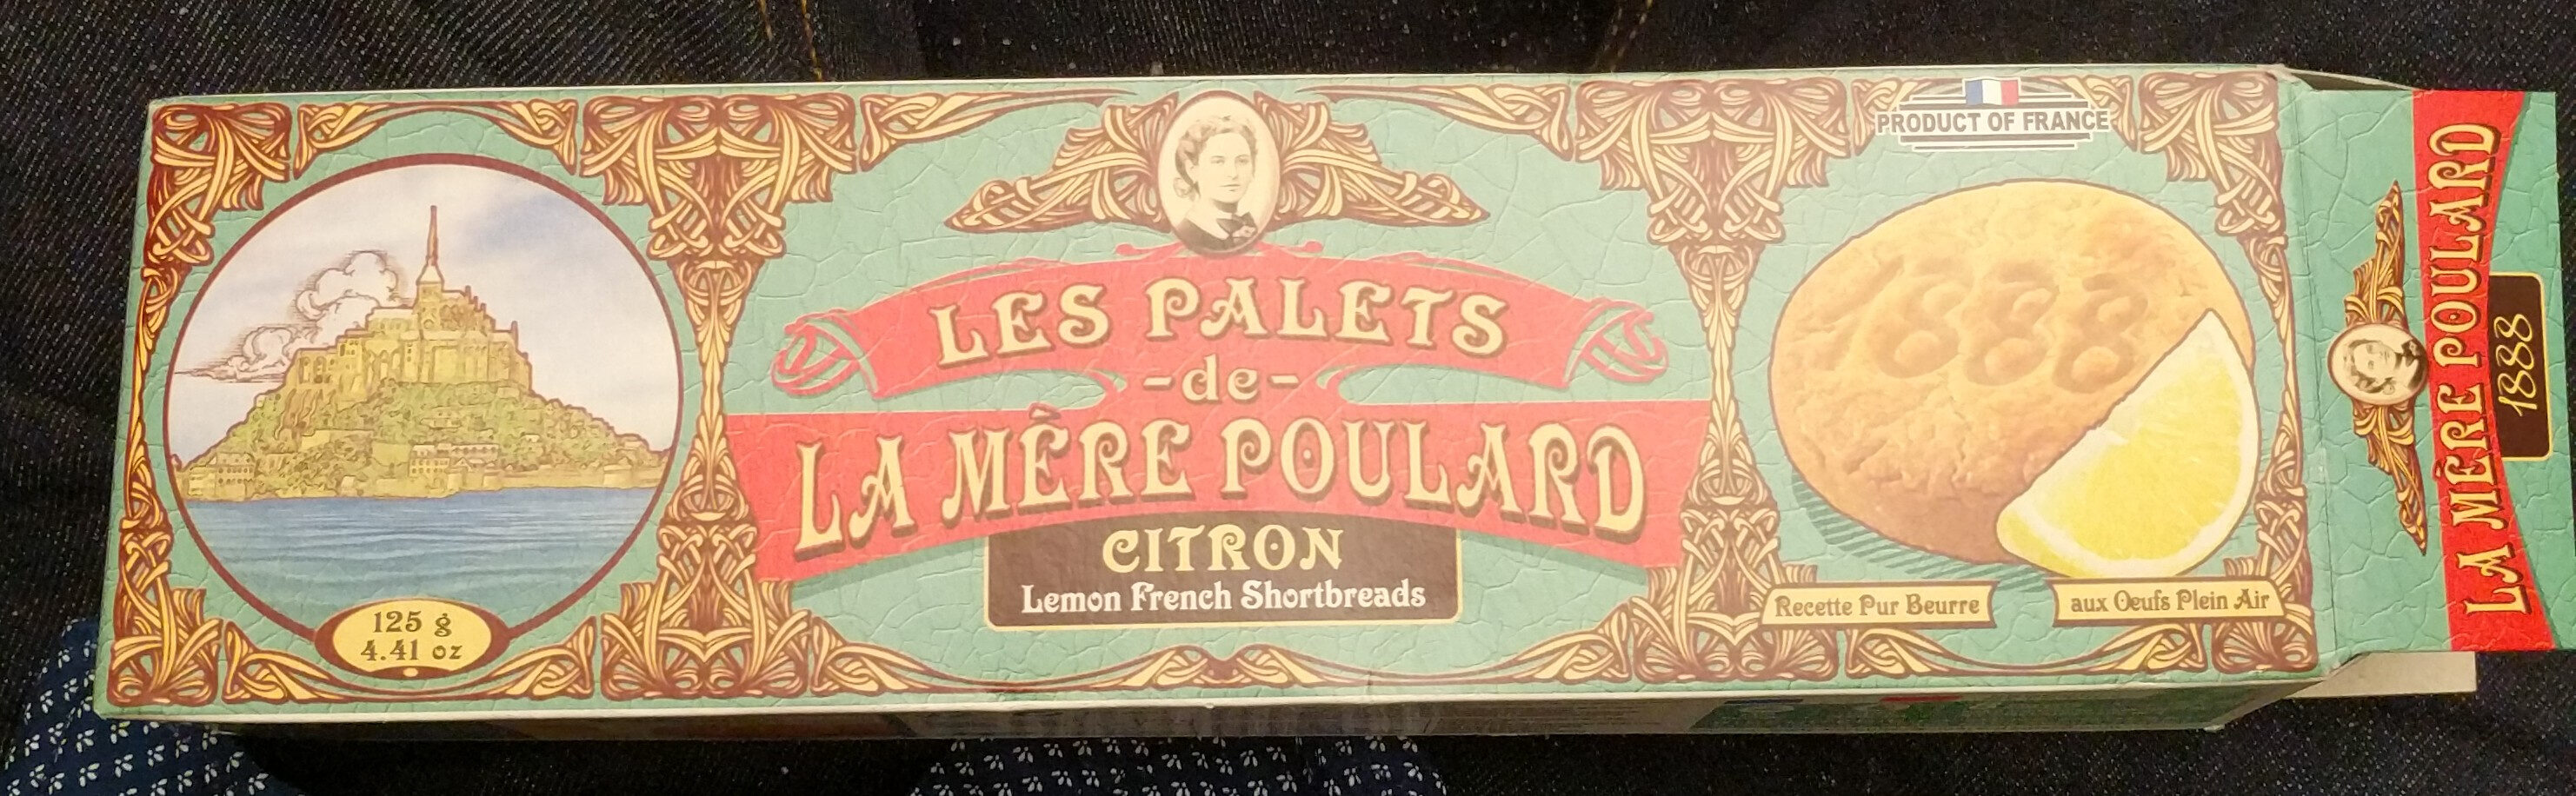 Palets Au Citron - Product - fr